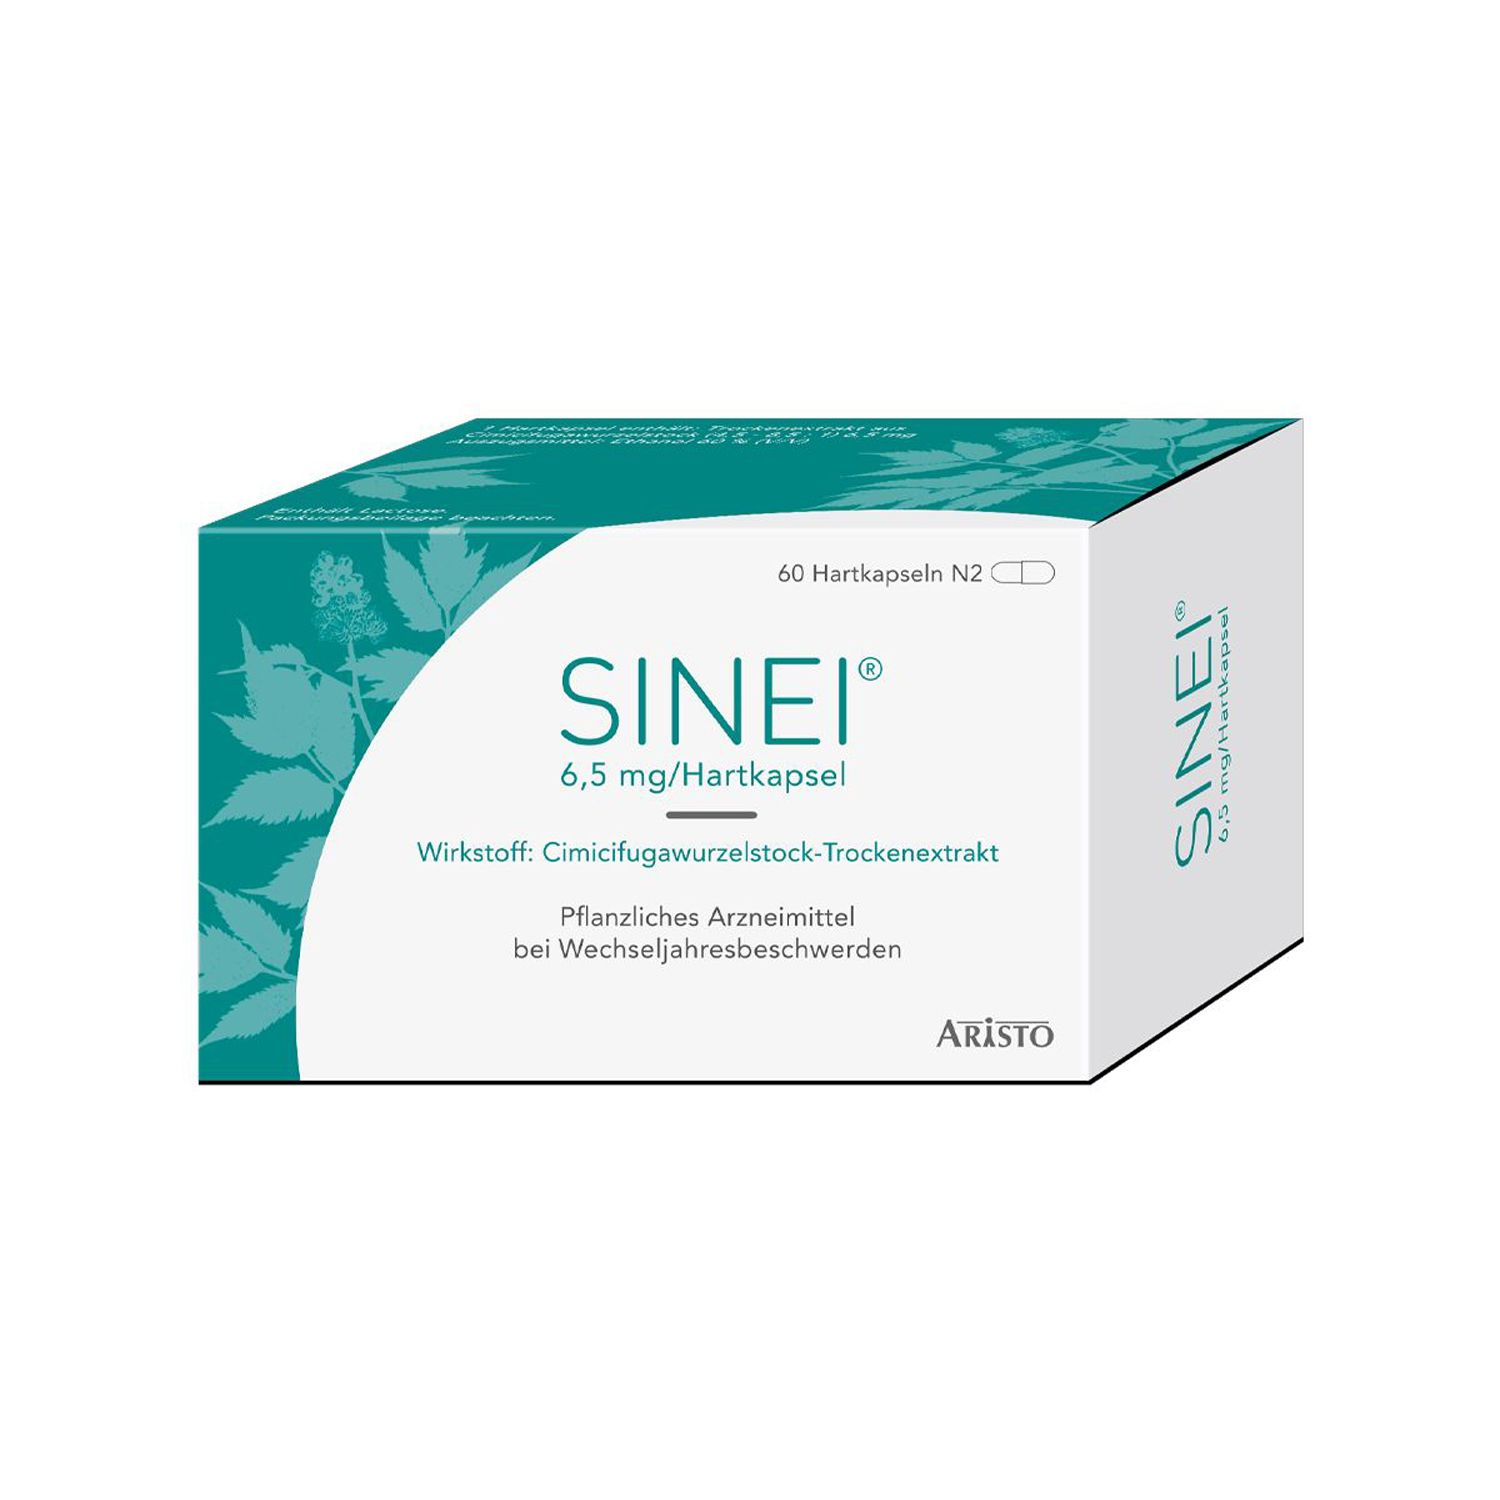 Sinei® 6,5 mg/Hartkapsel